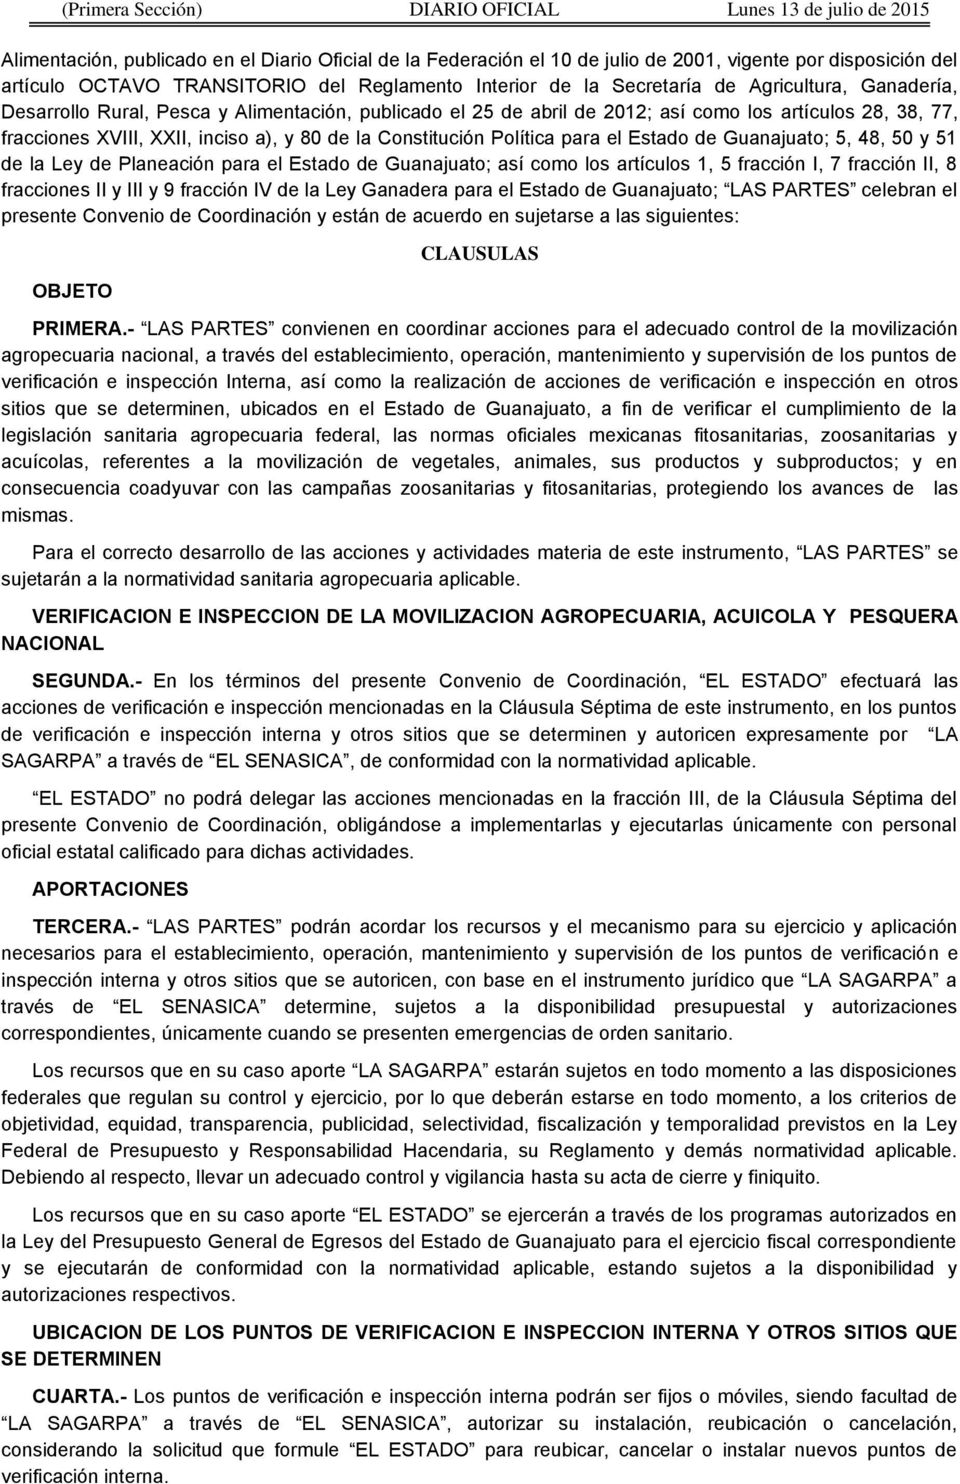 XVIII, XXII, inciso a), y 80 de la Constitución Política para el Estado de Guanajuato; 5, 48, 50 y 51 de la Ley de Planeación para el Estado de Guanajuato; así como los artículos 1, 5 fracción I, 7